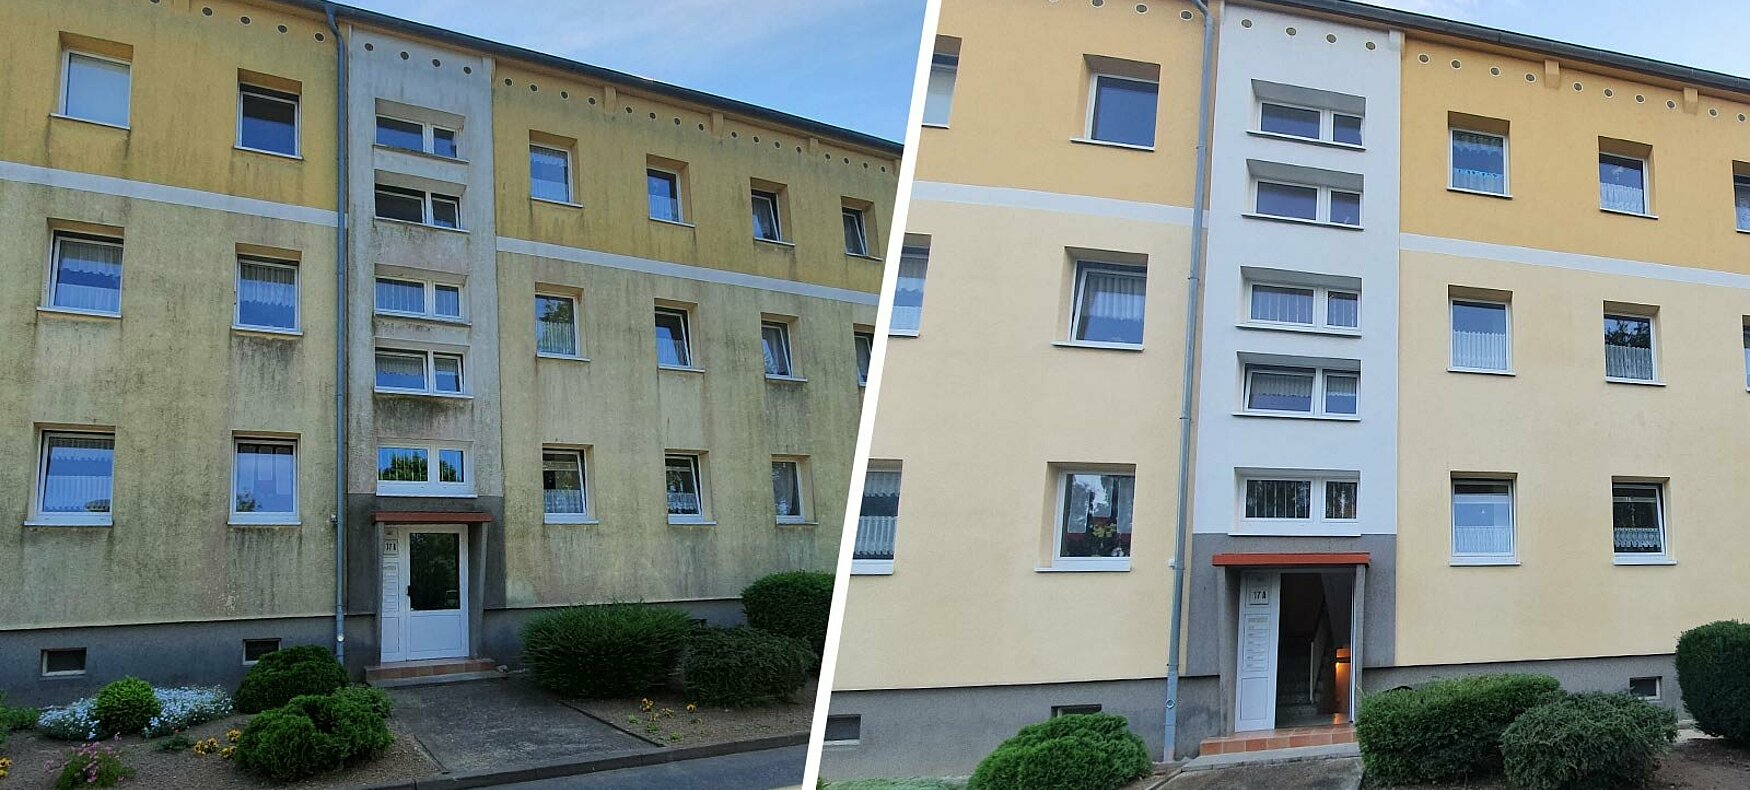 Fassadenreinigung Wismar: Jetzt Angebot einholen und Hauswand reinigen lassen.